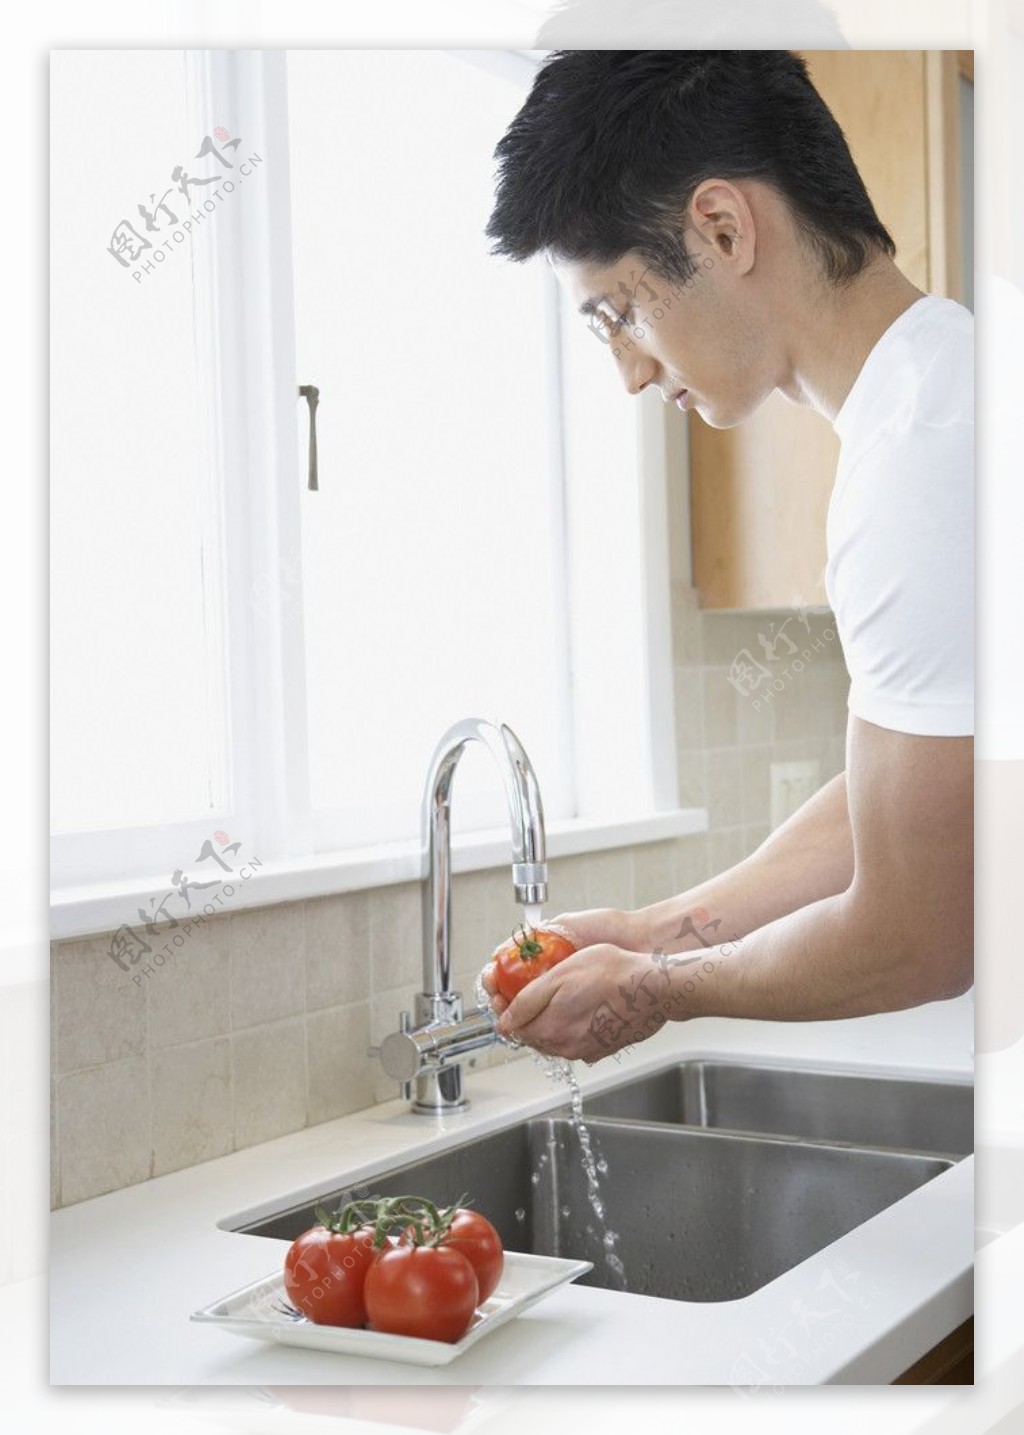 洗水果的男人图片